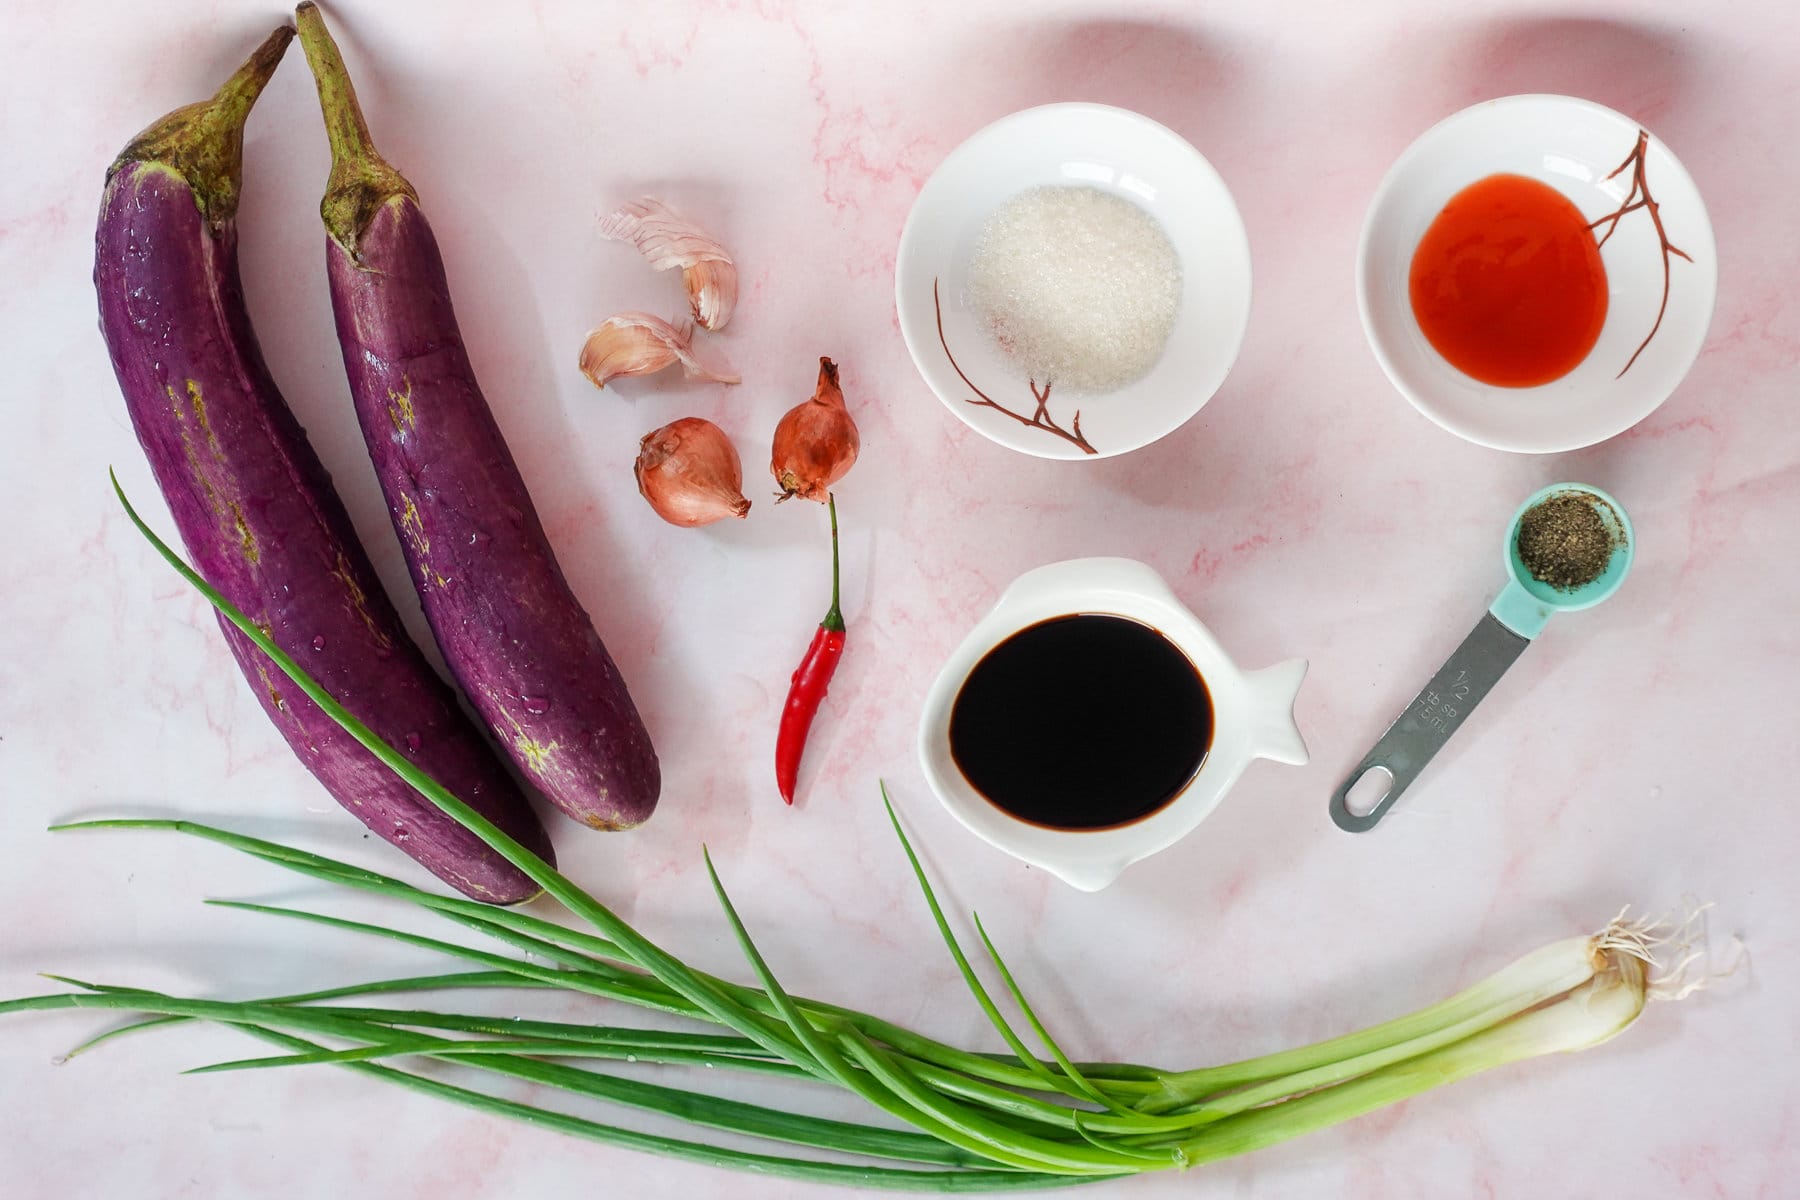 Vietnamese Braised Eggplant ingredients